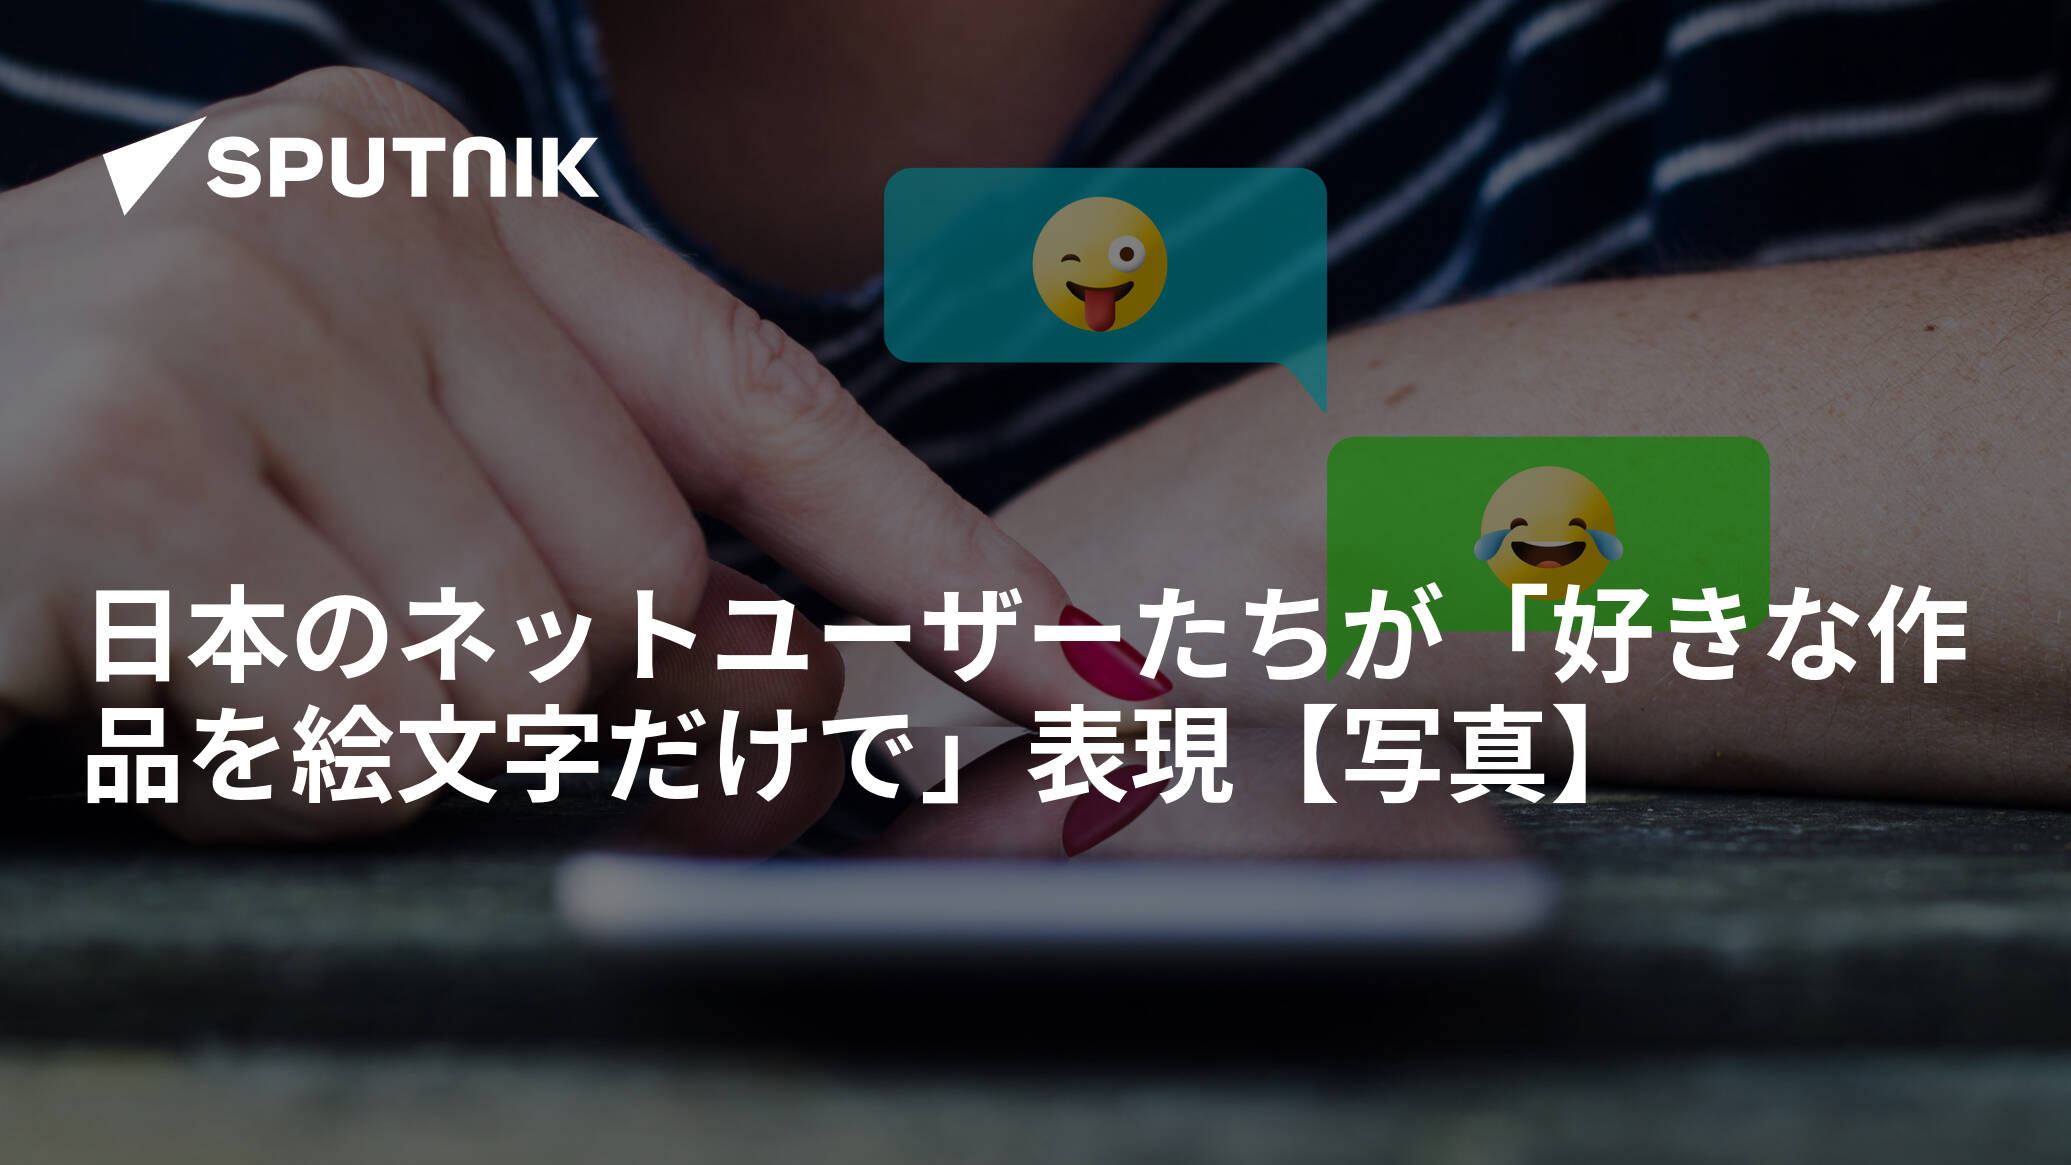 日本のネットユーザーたちが 好きな作品を絵文字だけで 表現 写真 17年10月9日 Sputnik 日本